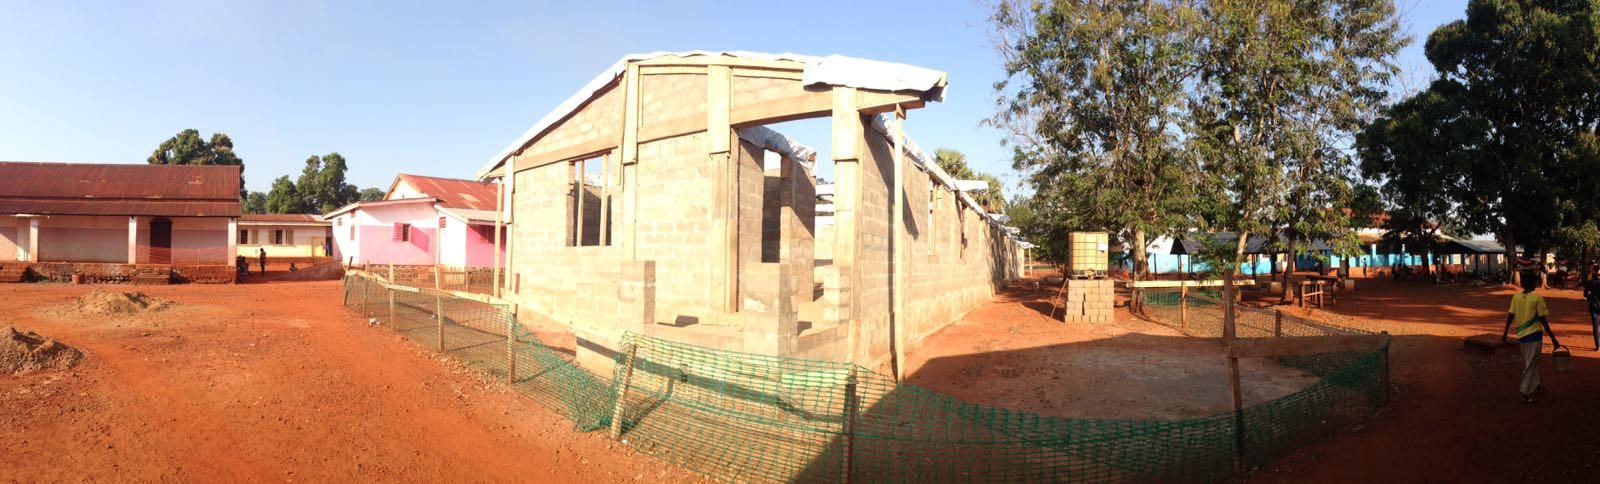 Salle actuelle des urgences de l'hôpital de Bangassou